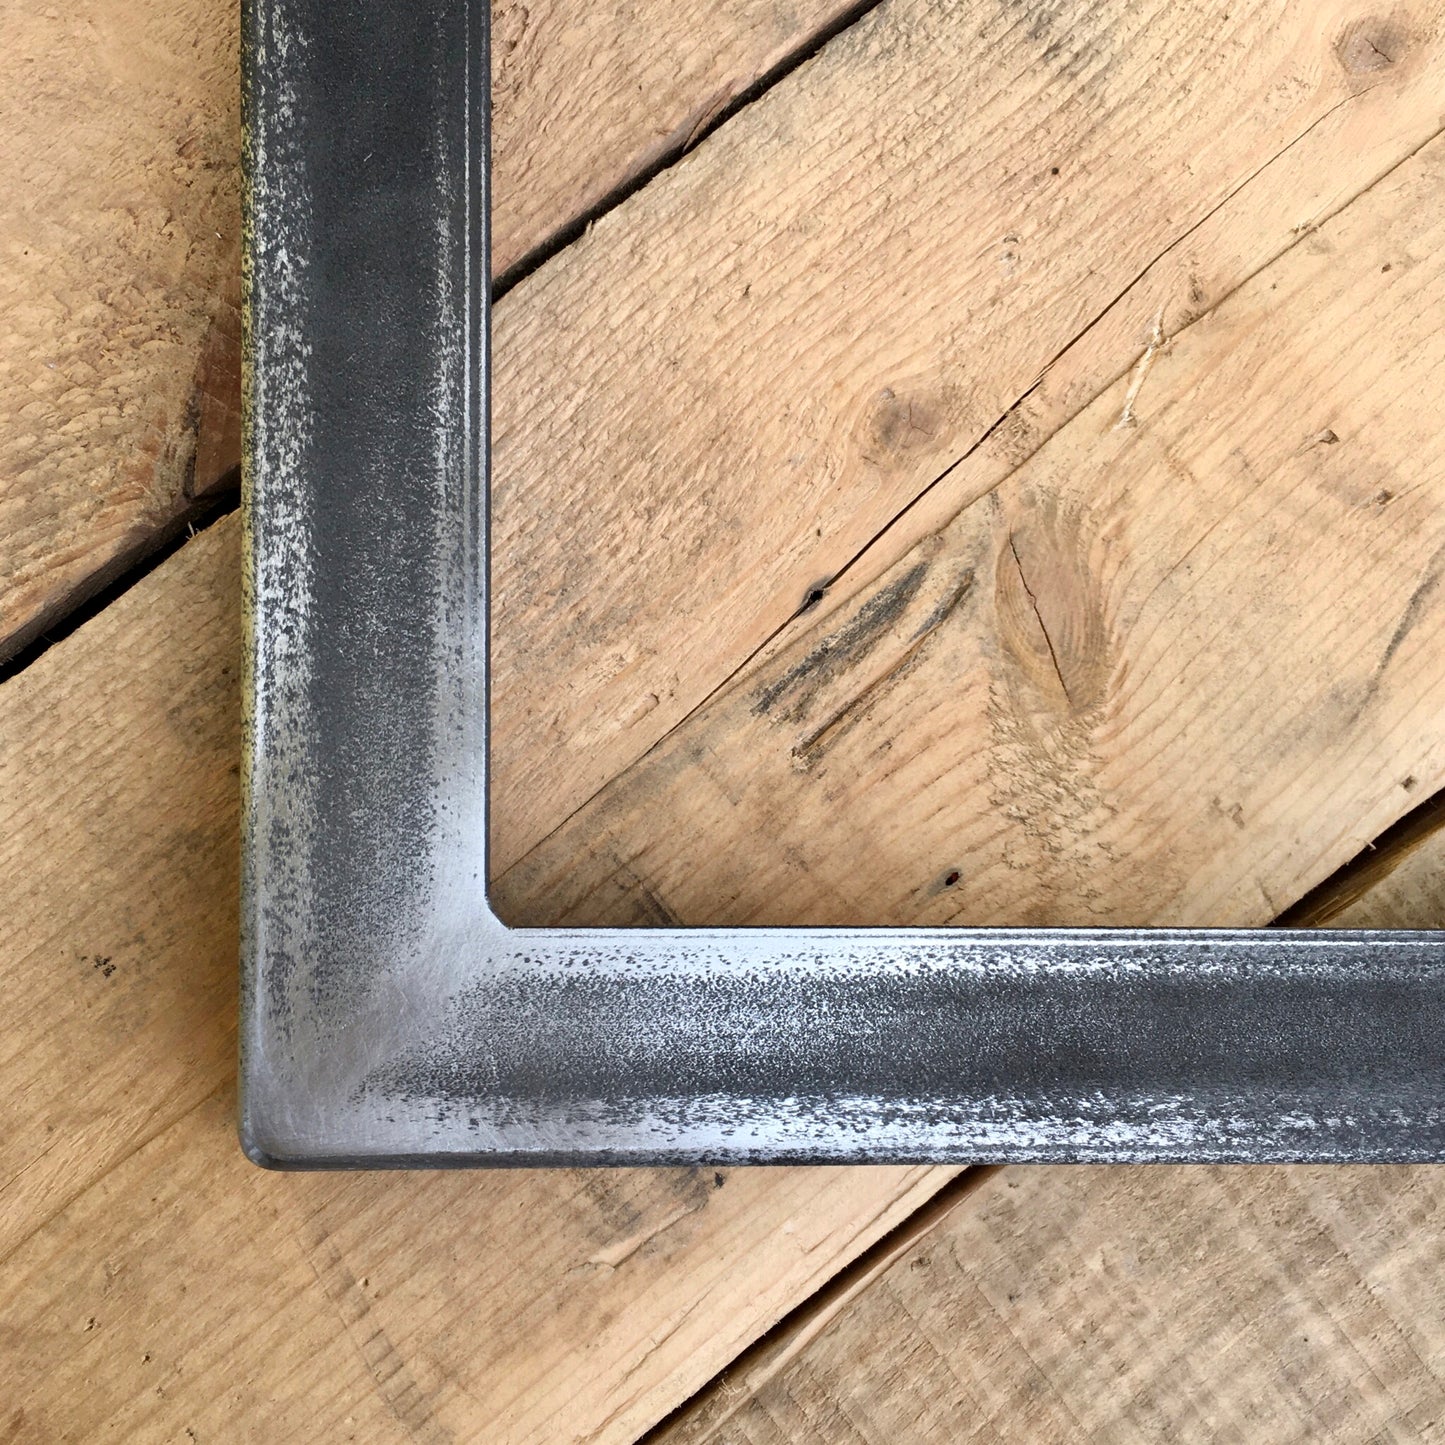 shelf assembly | industrial brackets + oak